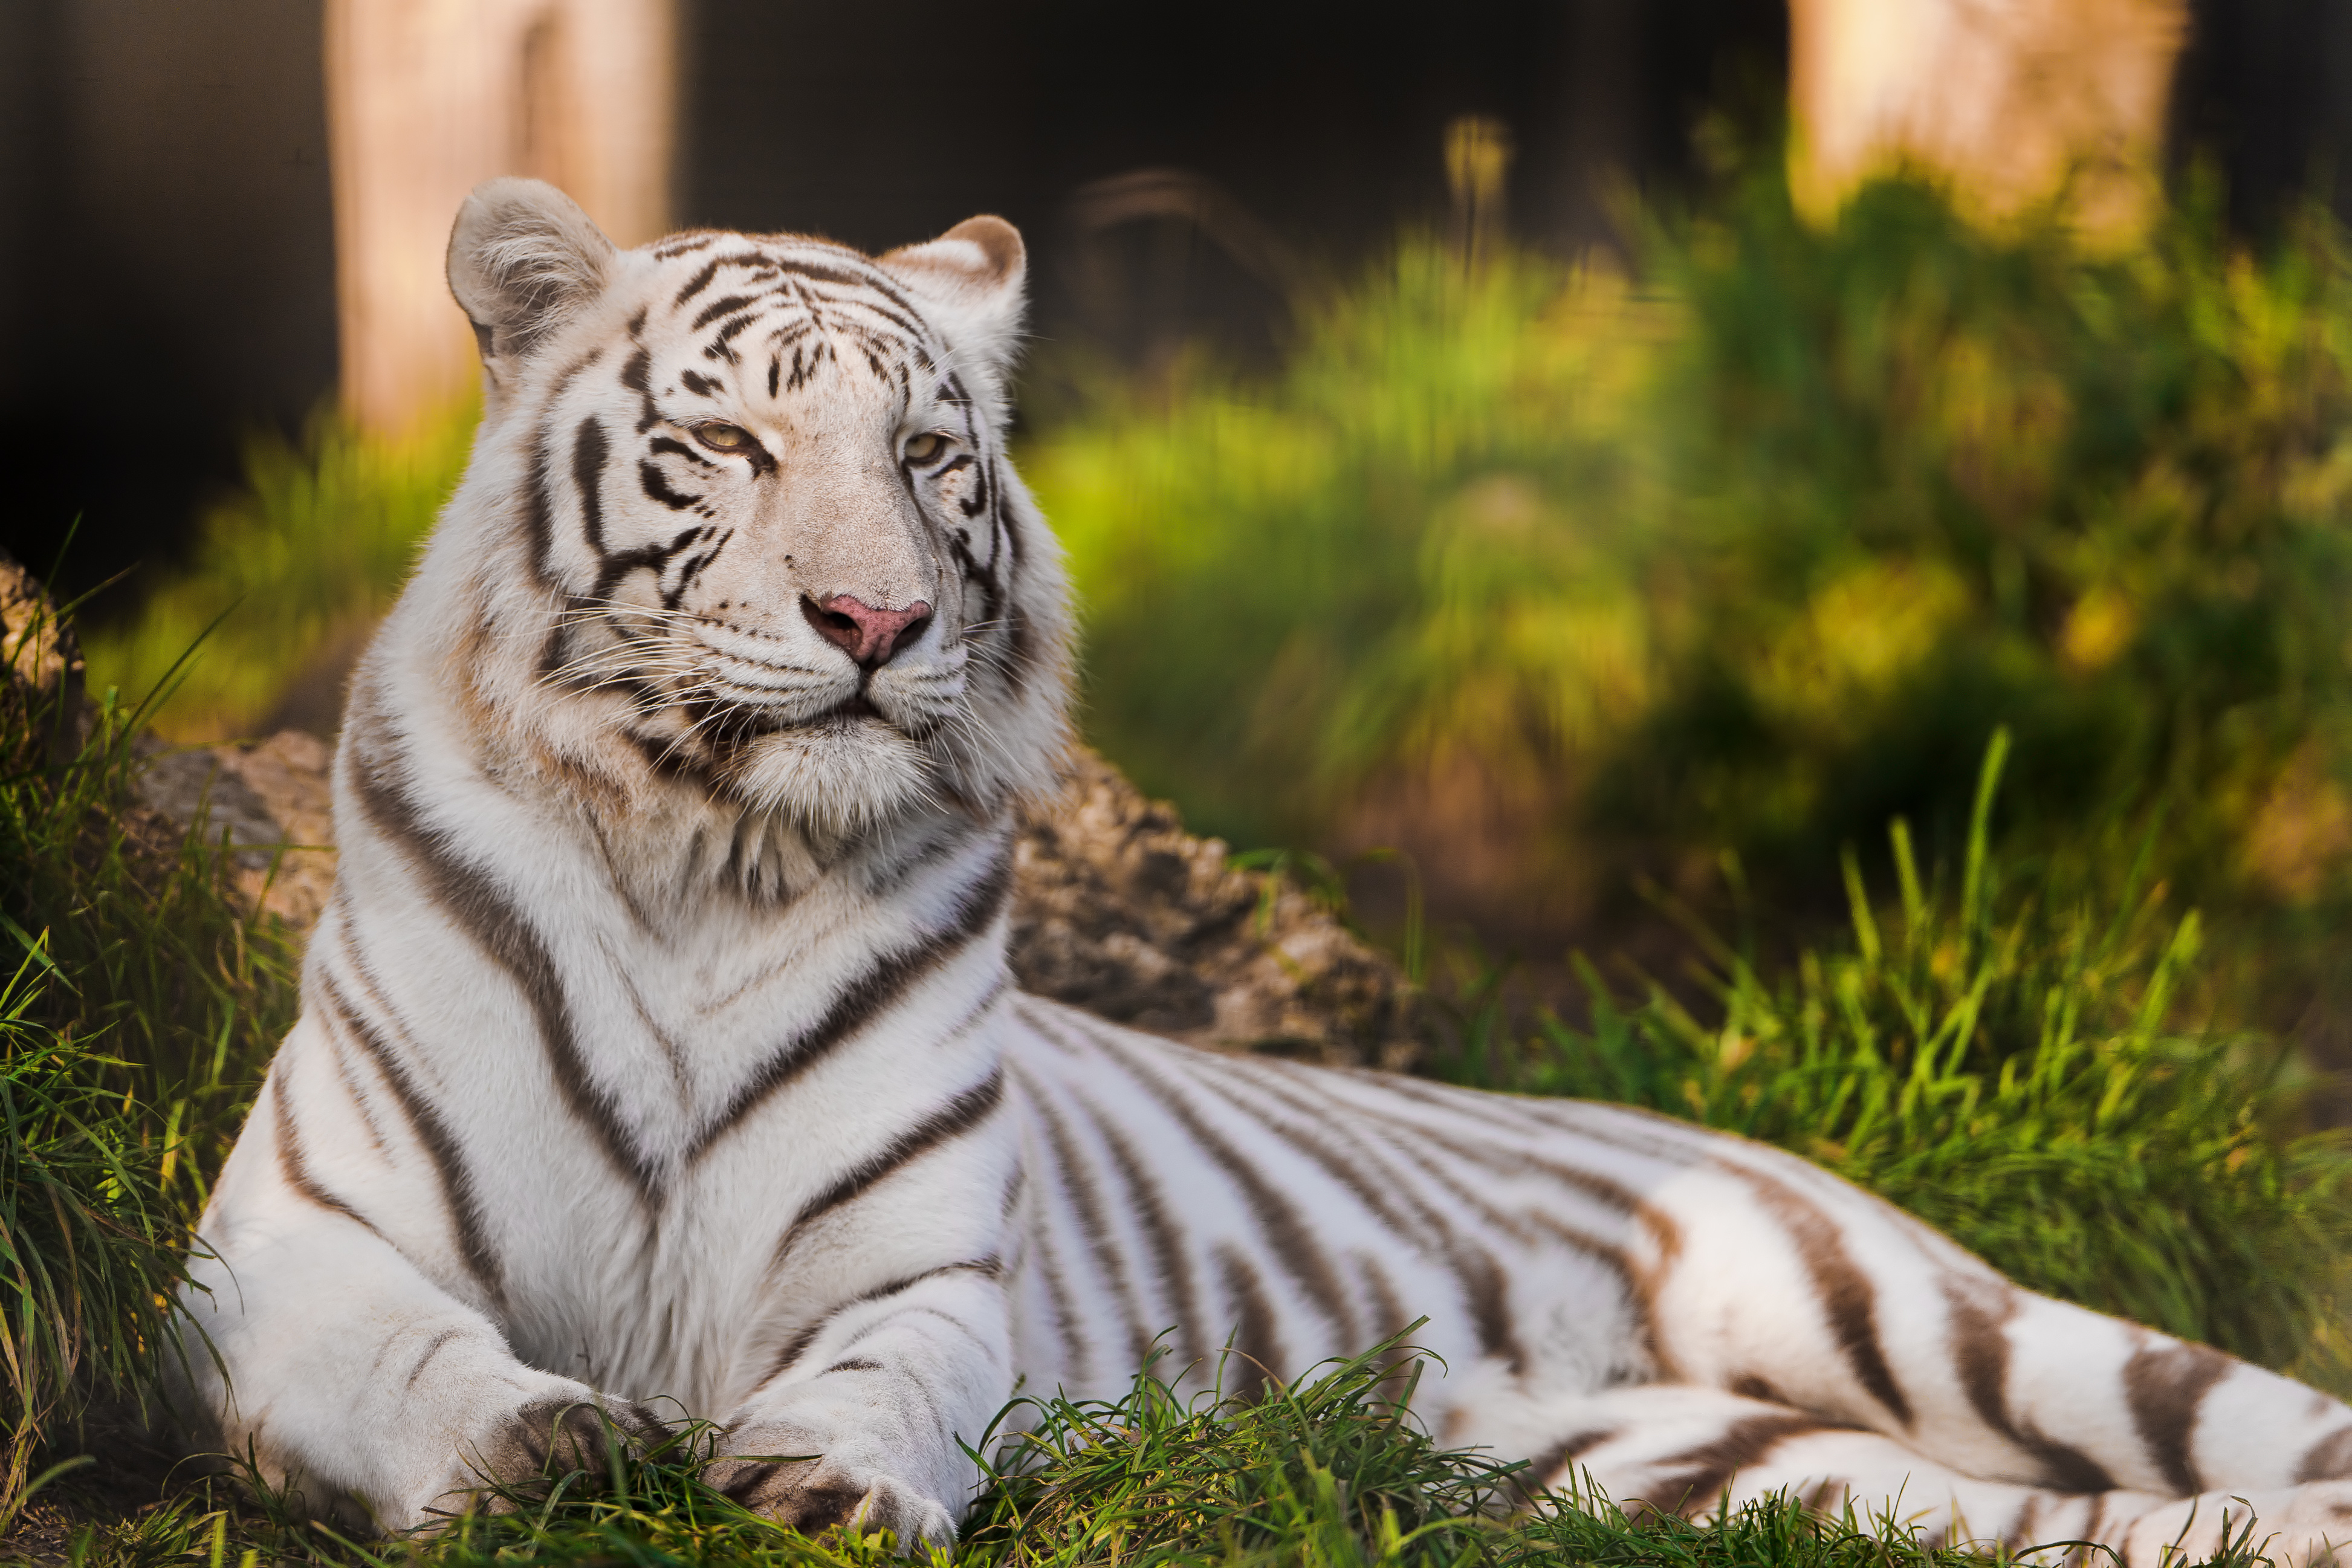 Картинки на телефон на заставку. Тигр. Бенгальский тигр. Амурский тигр белый. Белый тигр 2021.